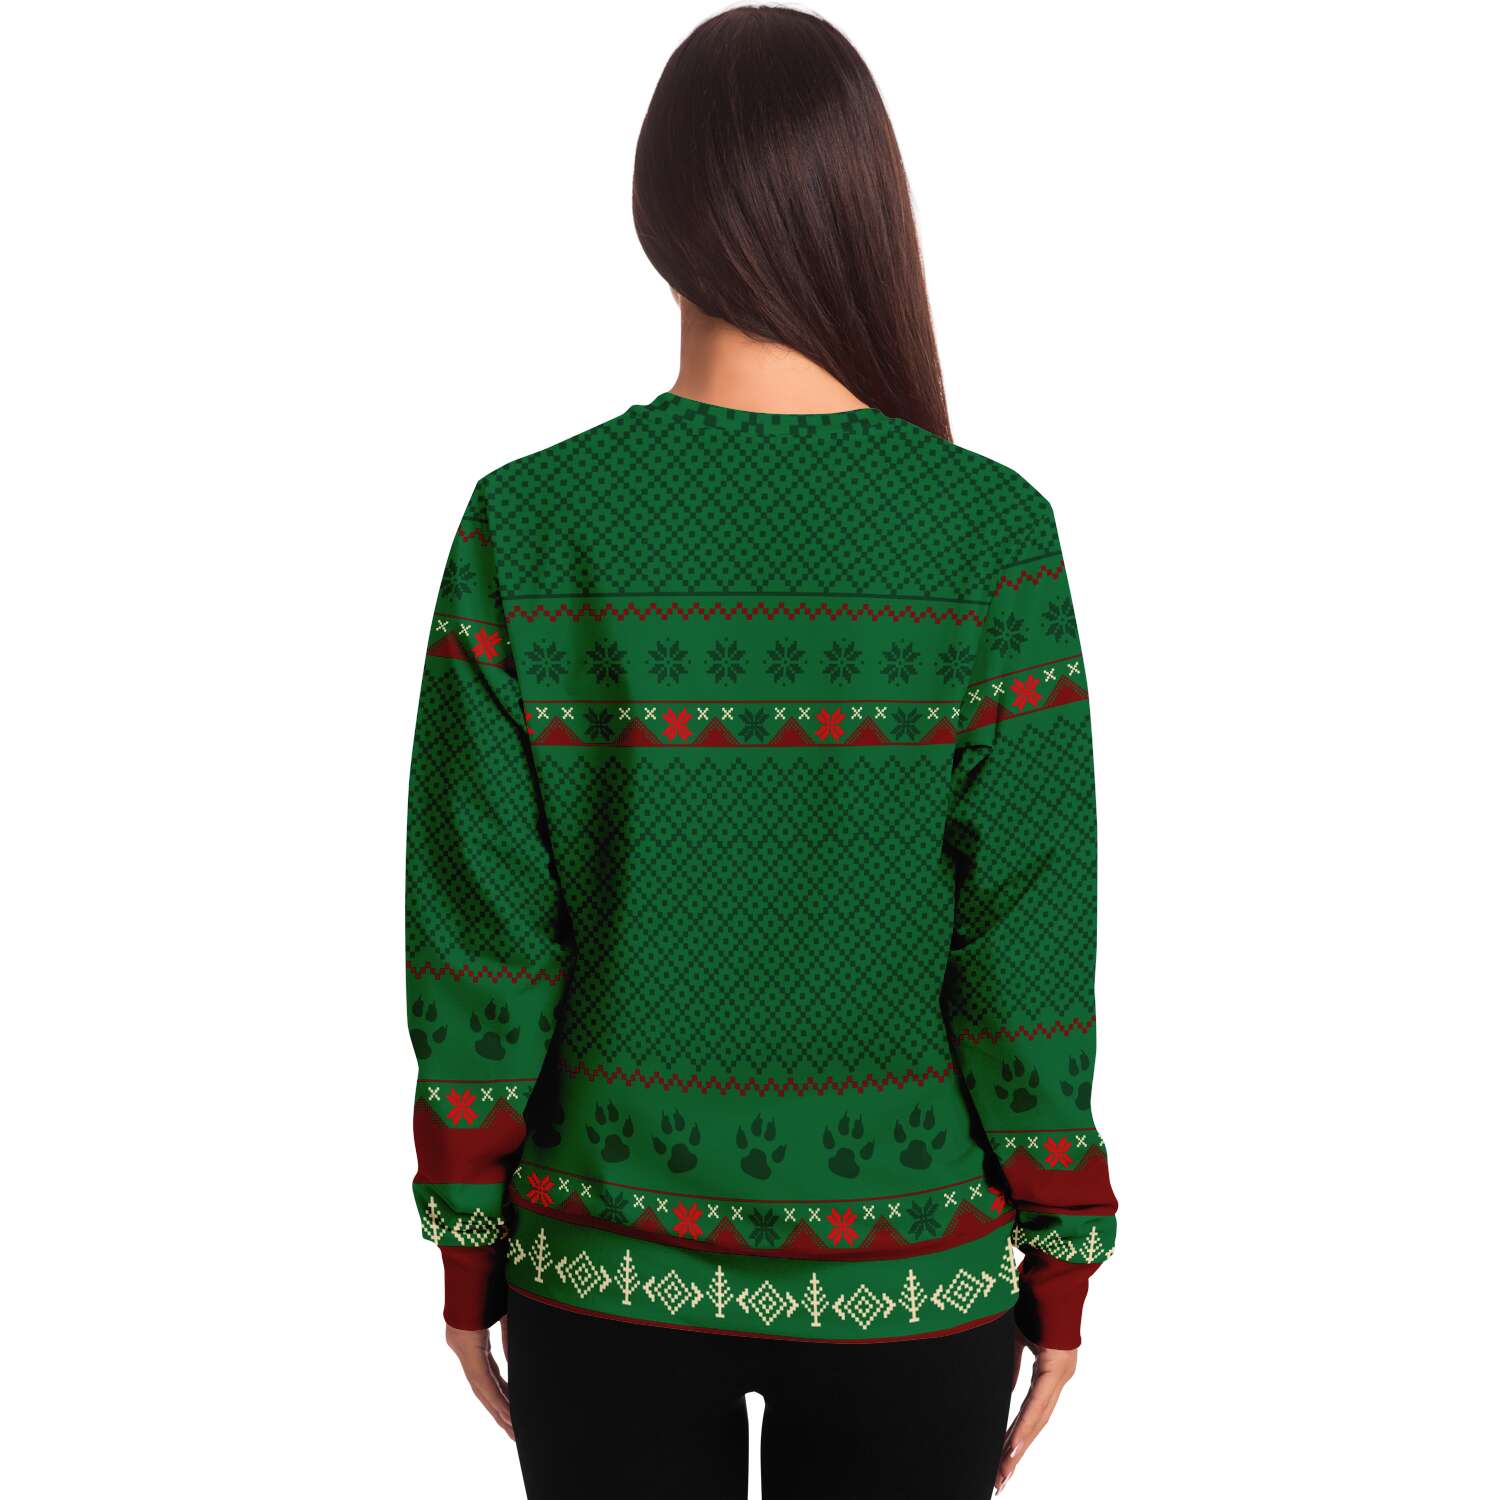 Feliz Navidog - Shiba Inu - Funny Dog Lover Ugly Christmas Sweater (Sweatshirt)